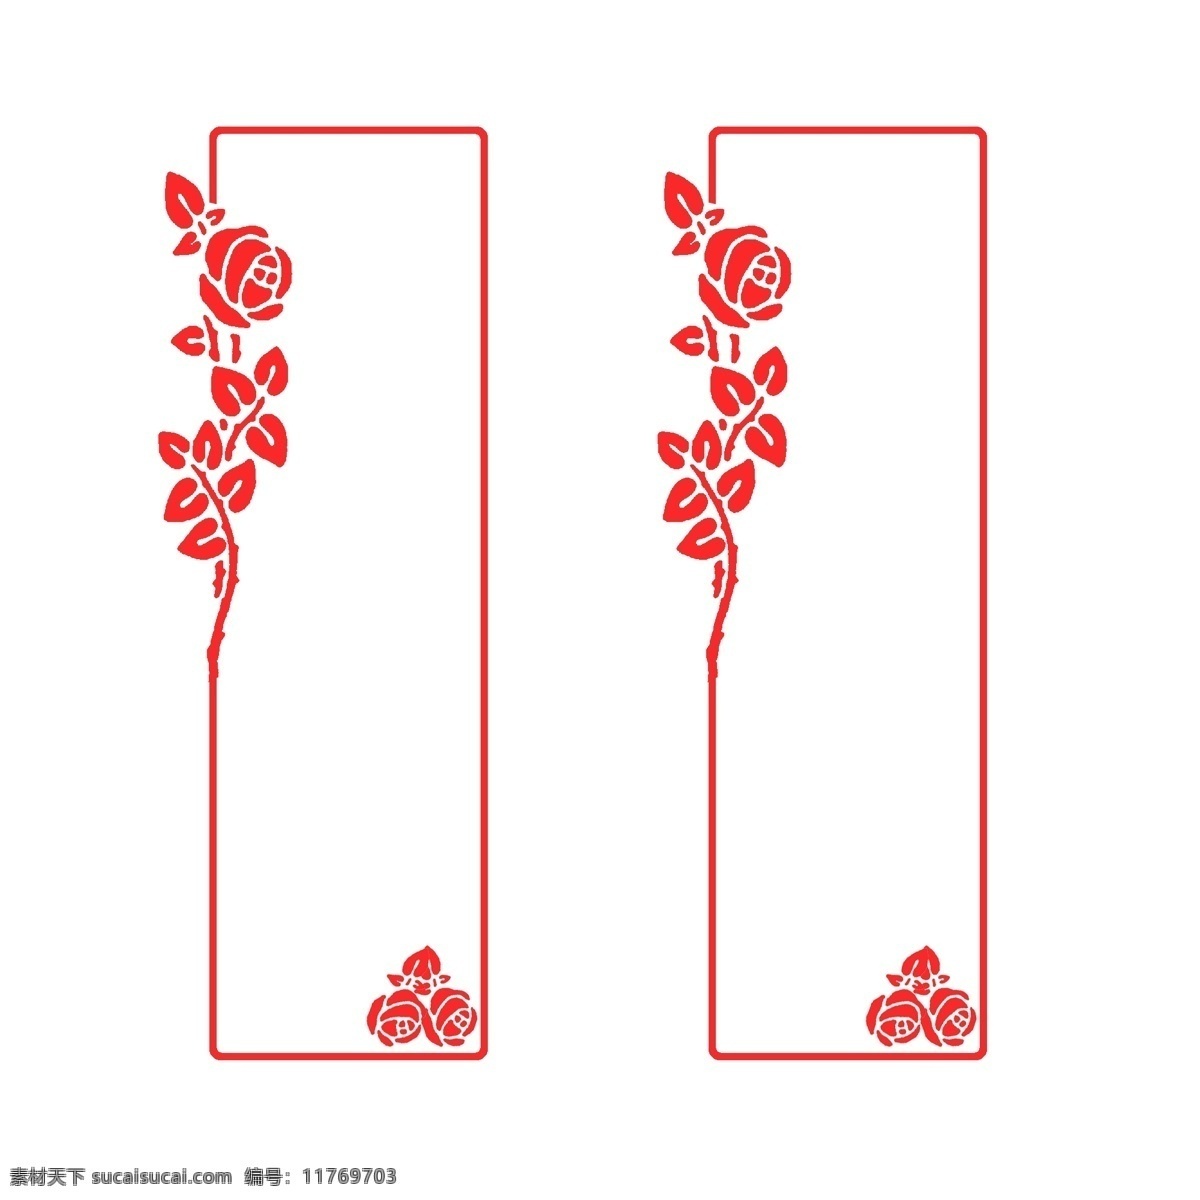 长方形 玫瑰 典图 框 装饰 边框 红色 商务 封面 插图 简约 中国风 圆形 花 海报 中国红 简洁 大气 玫瑰花